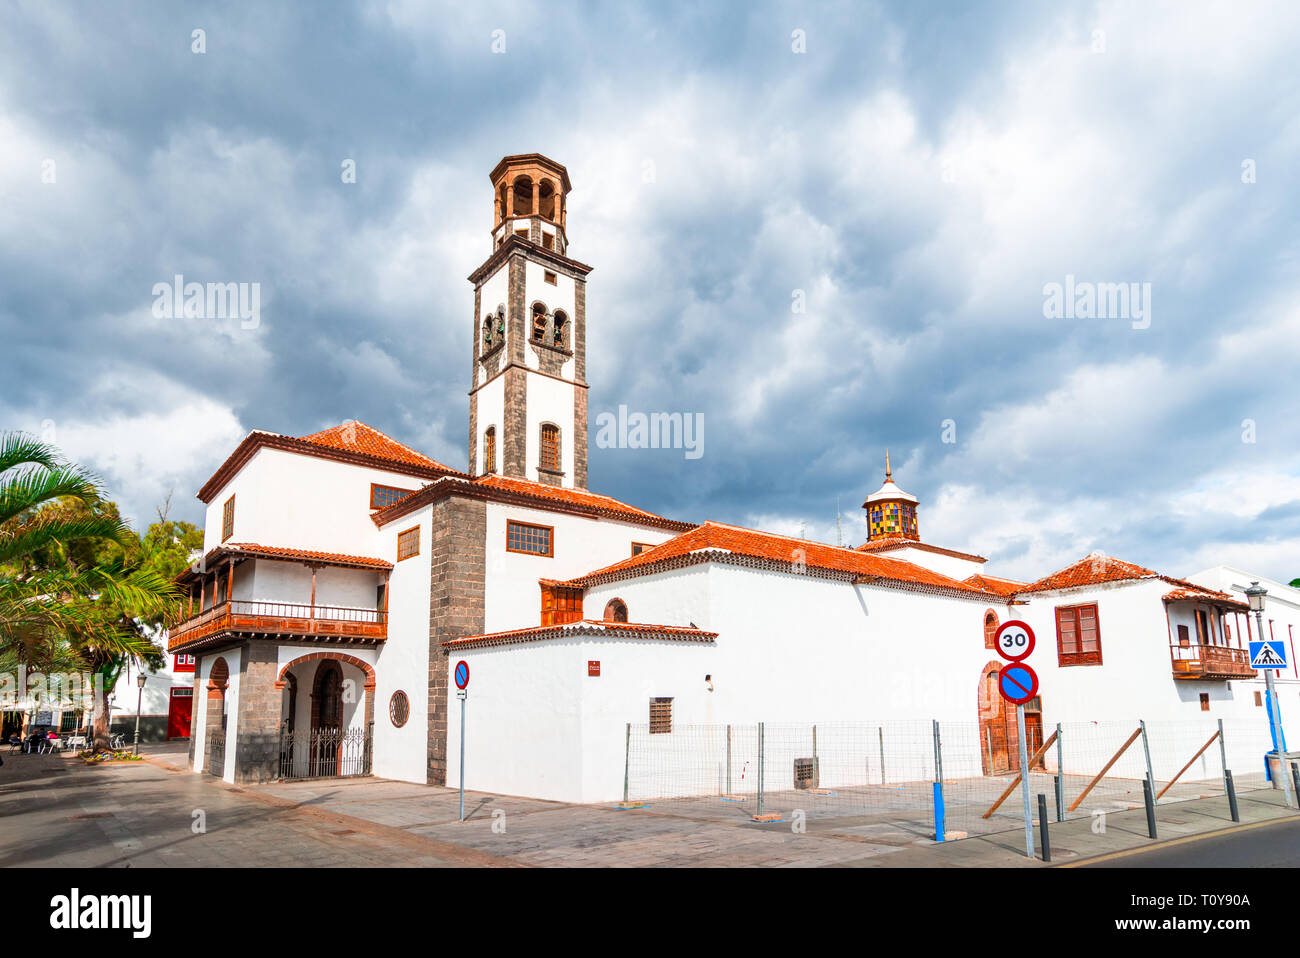 Kirche der Unbefleckten Empfängnis, Santa Cruz de Tenerife, Kanarische Inseln, Spanien: Schöne Kirche an einem sonnigen Tag. Stockfoto